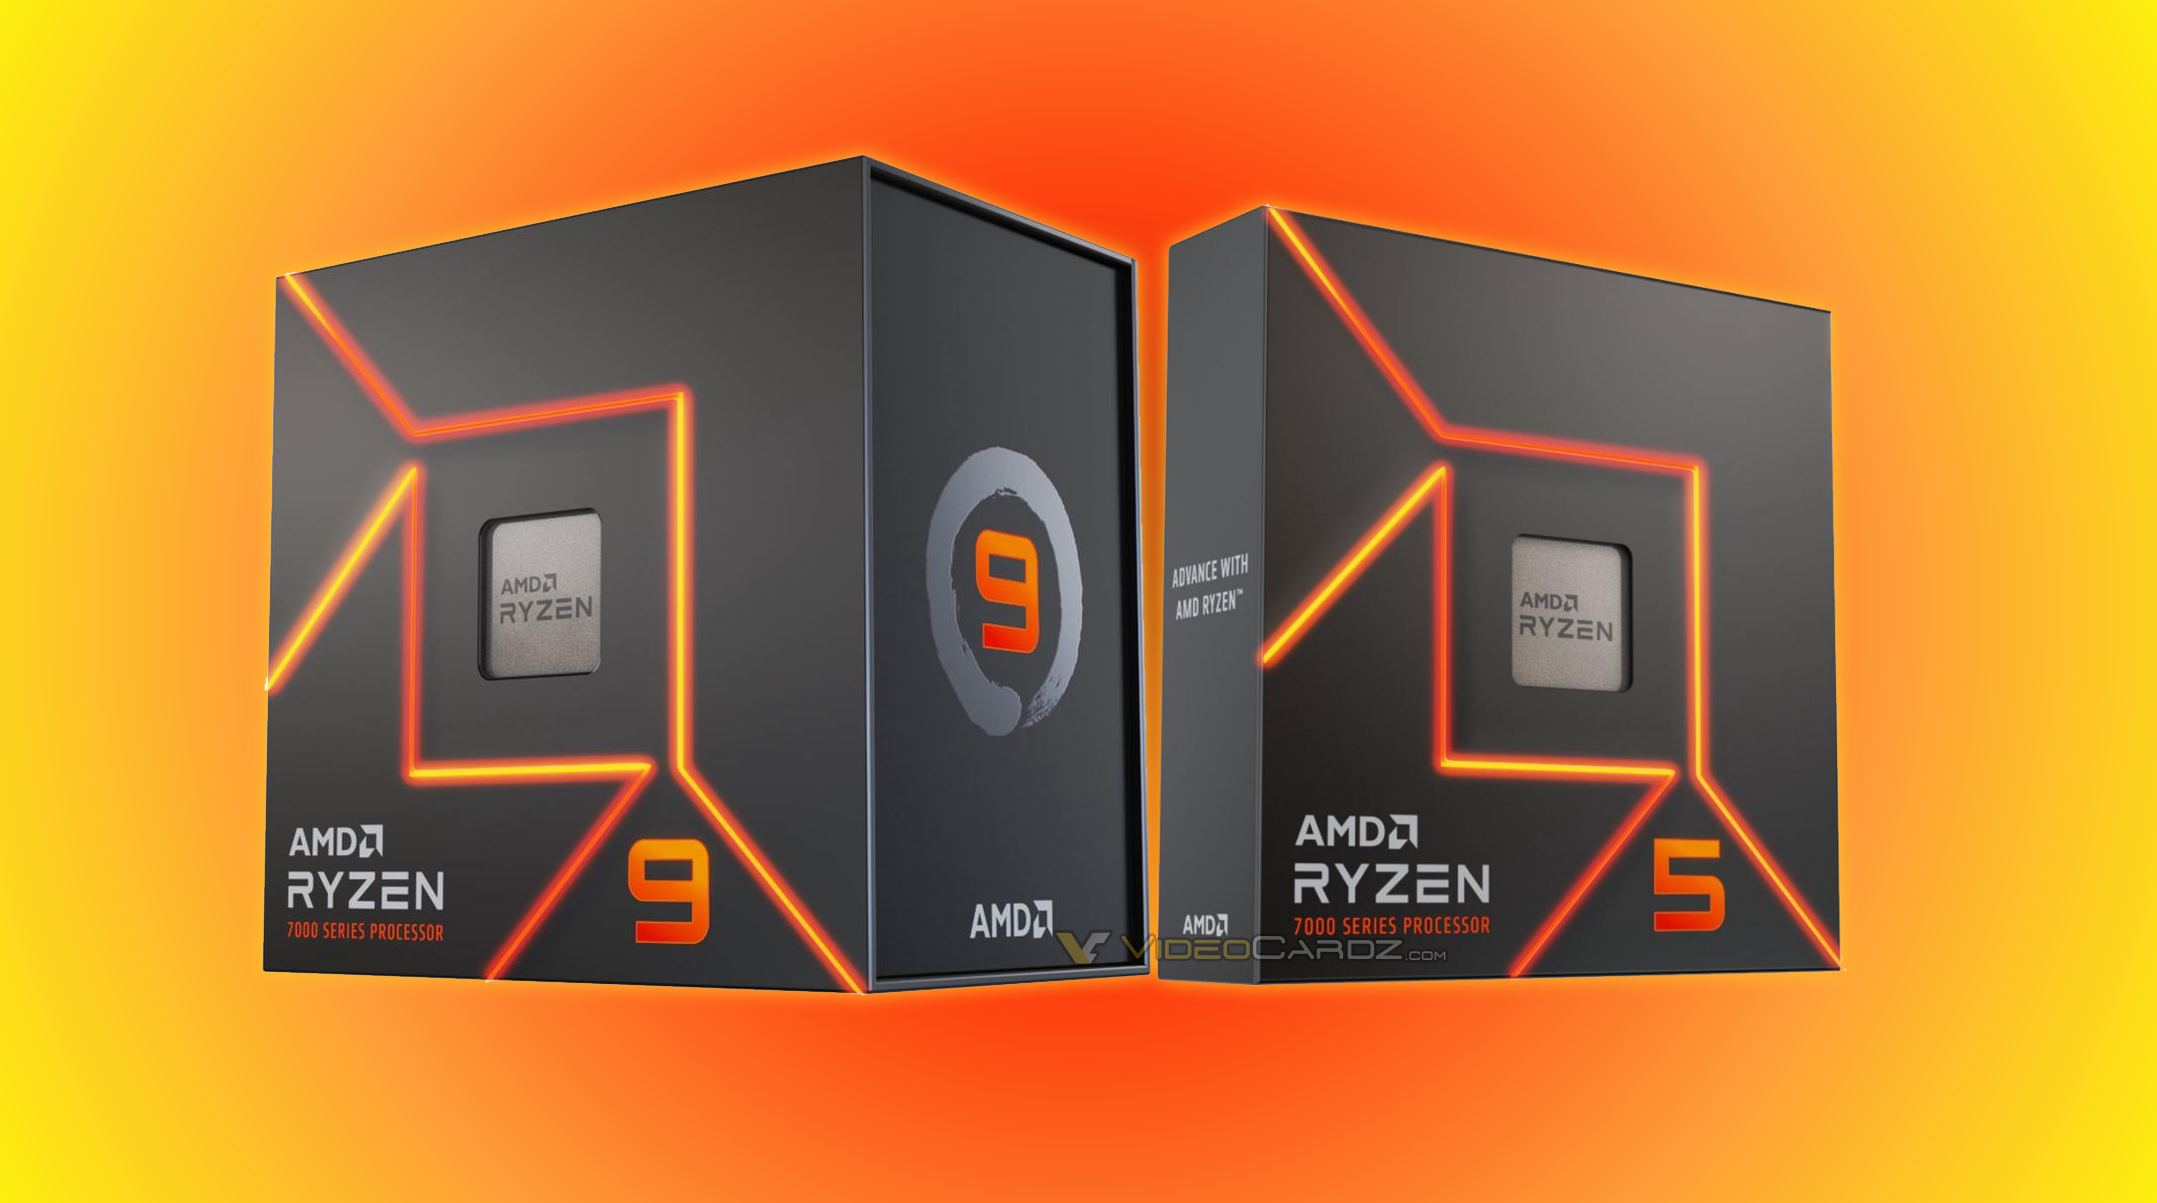 AMD Ryzen 7000 CPUs get new packaging design, lower prices still 